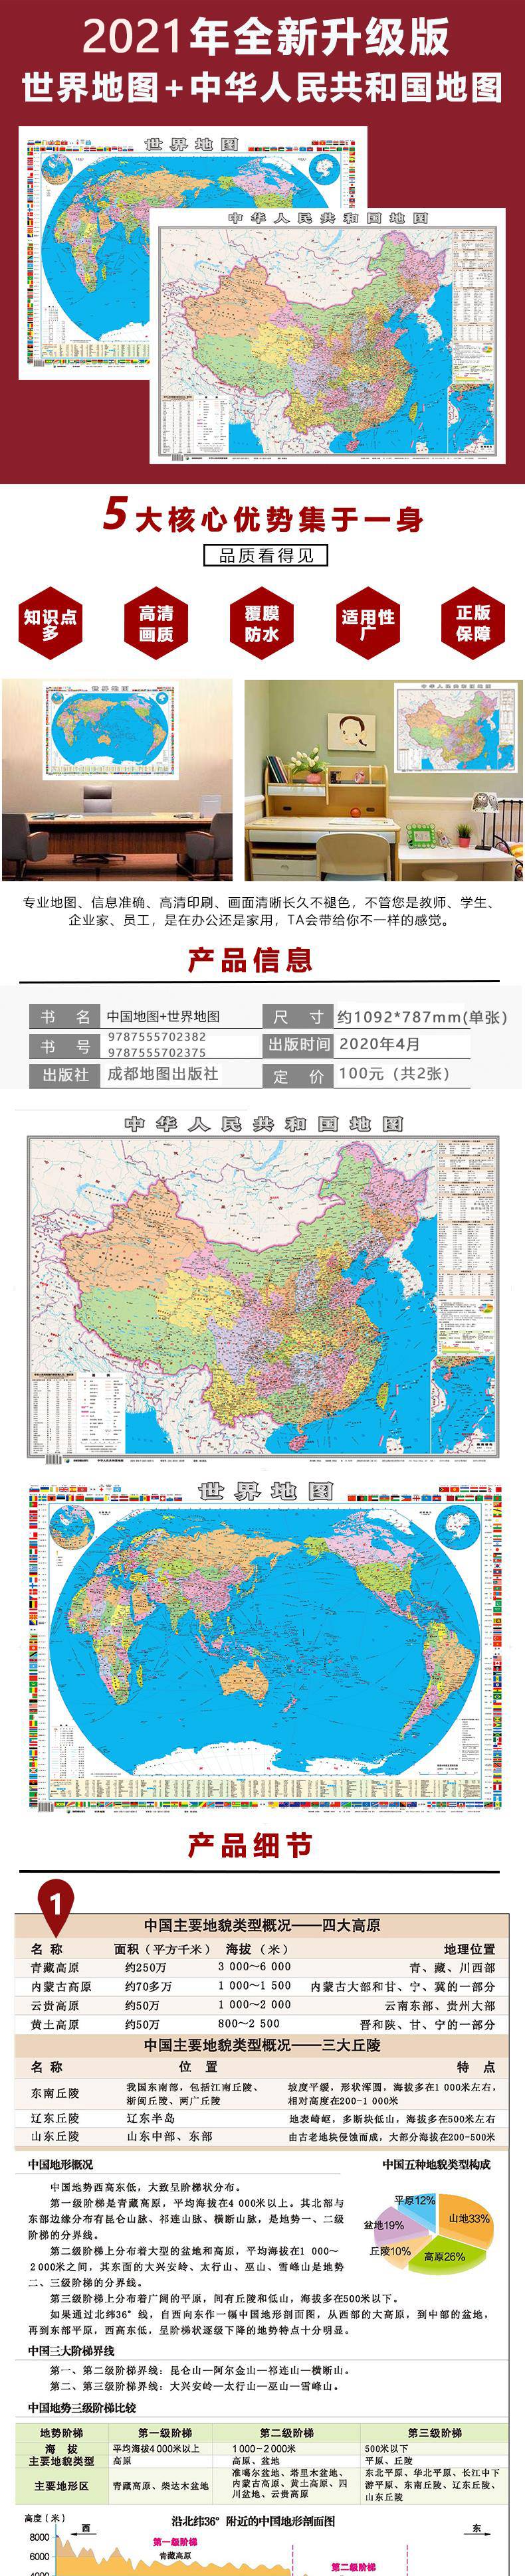 【2张】2021年通用全新正版中国地图墙贴 超大世界地图挂图家用高清